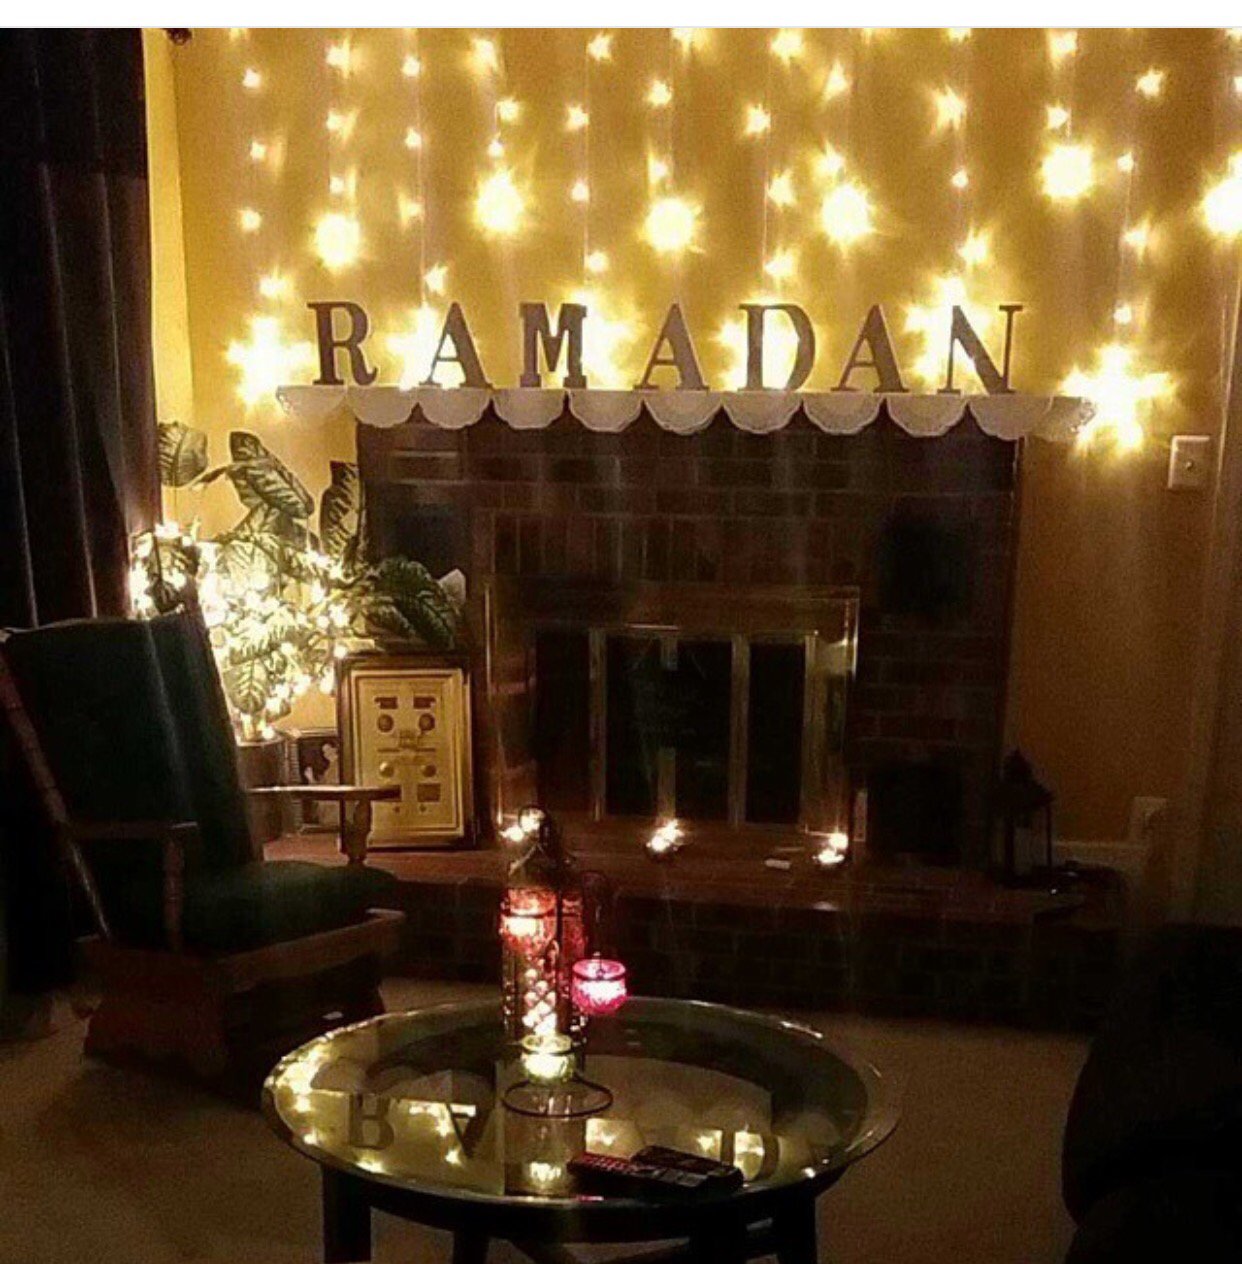 جهزي منزلك لاستقبال شهر رمضان بخطوات بسيطة